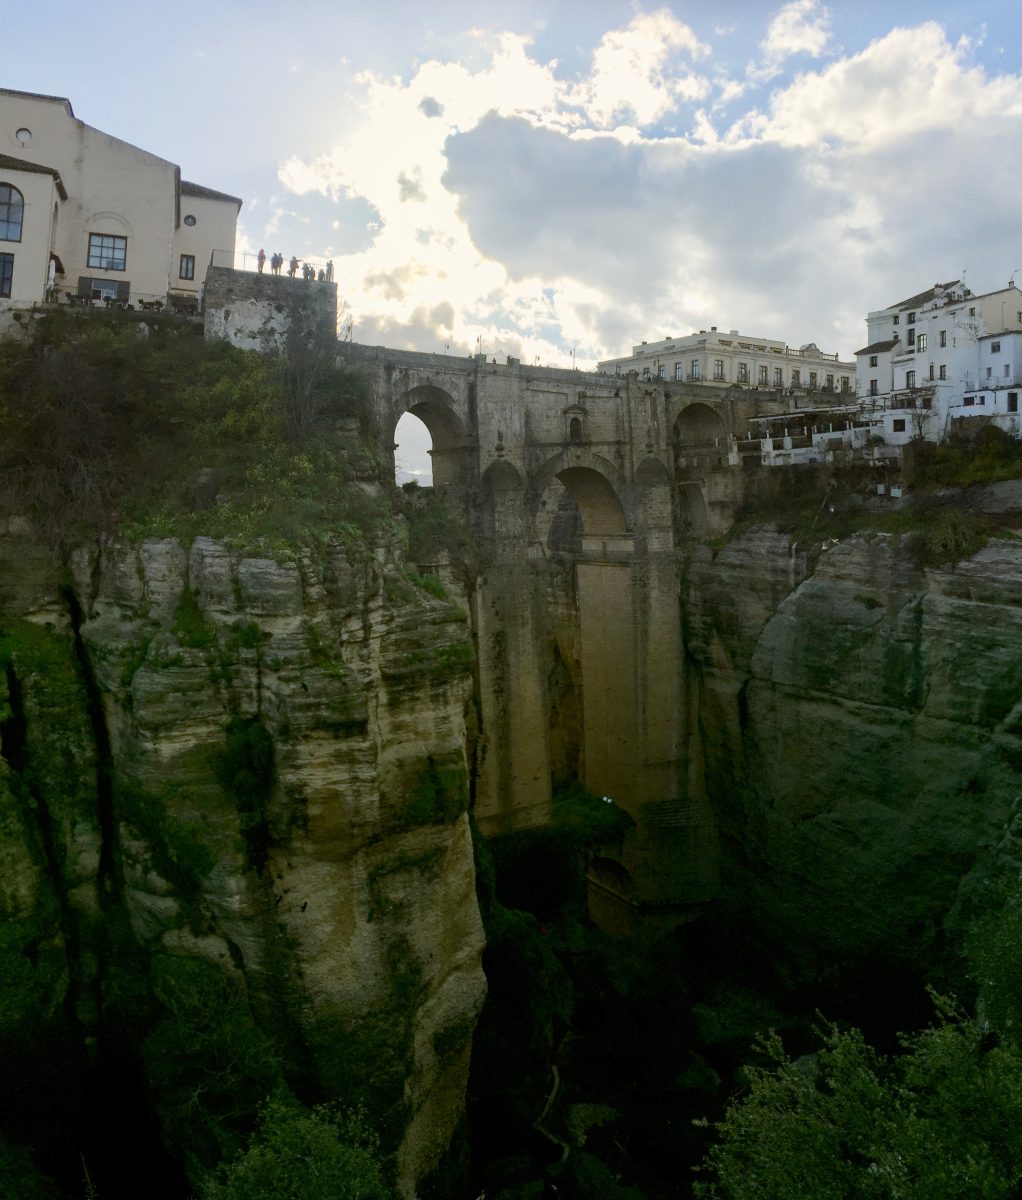 Puente Nuevo Ronda - mountaintop city in Spain’s Malaga province.